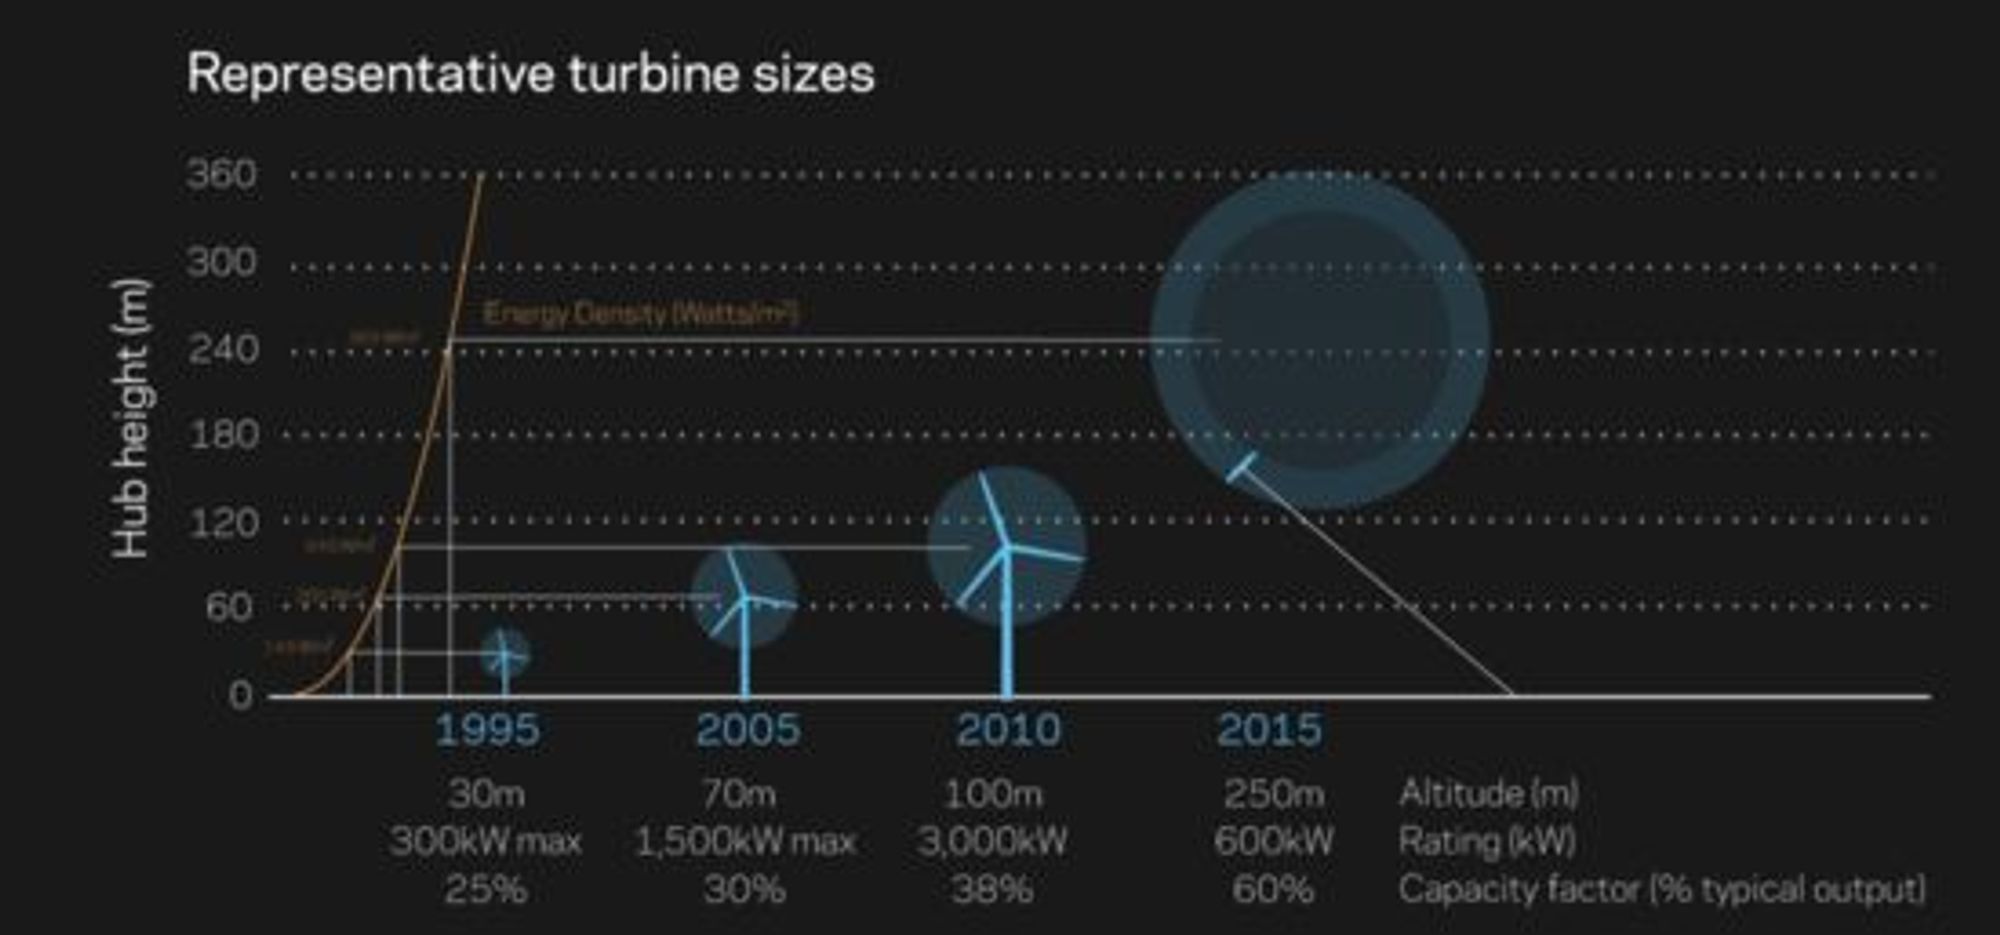 Høy, makseffekt og typisk utnyttelsesgrad til ulike typer vindturbiner, ifølge Makani Power og en ekstern rapport. Tallene for Makinis Airborne Wind Turbine er estimater.